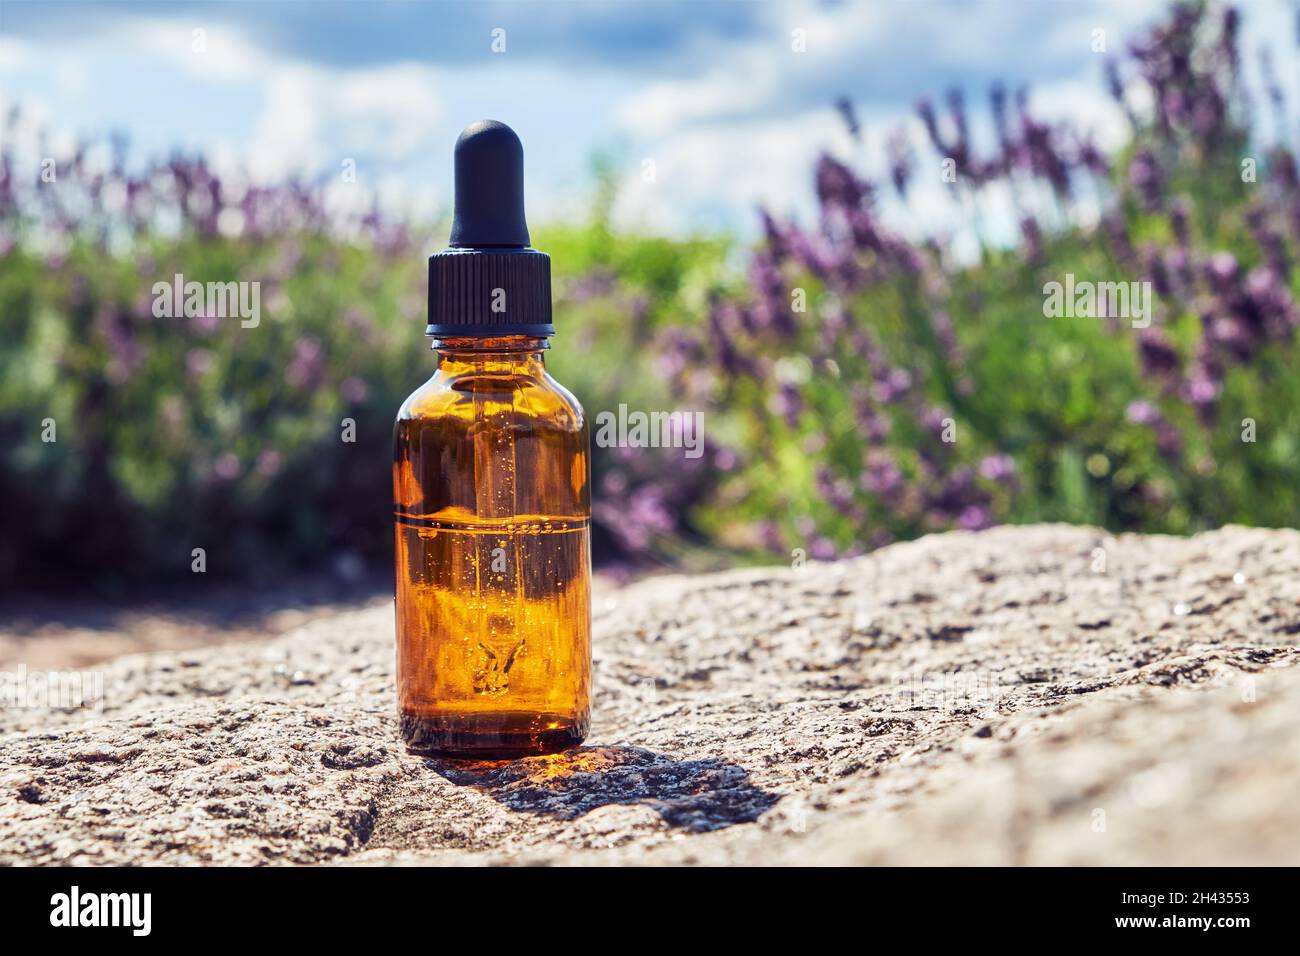 Tropfflaschen mit ätherischem Lavendelöl. Blühende Lavendelbüsche auf dem Hintergrund. Stockfoto